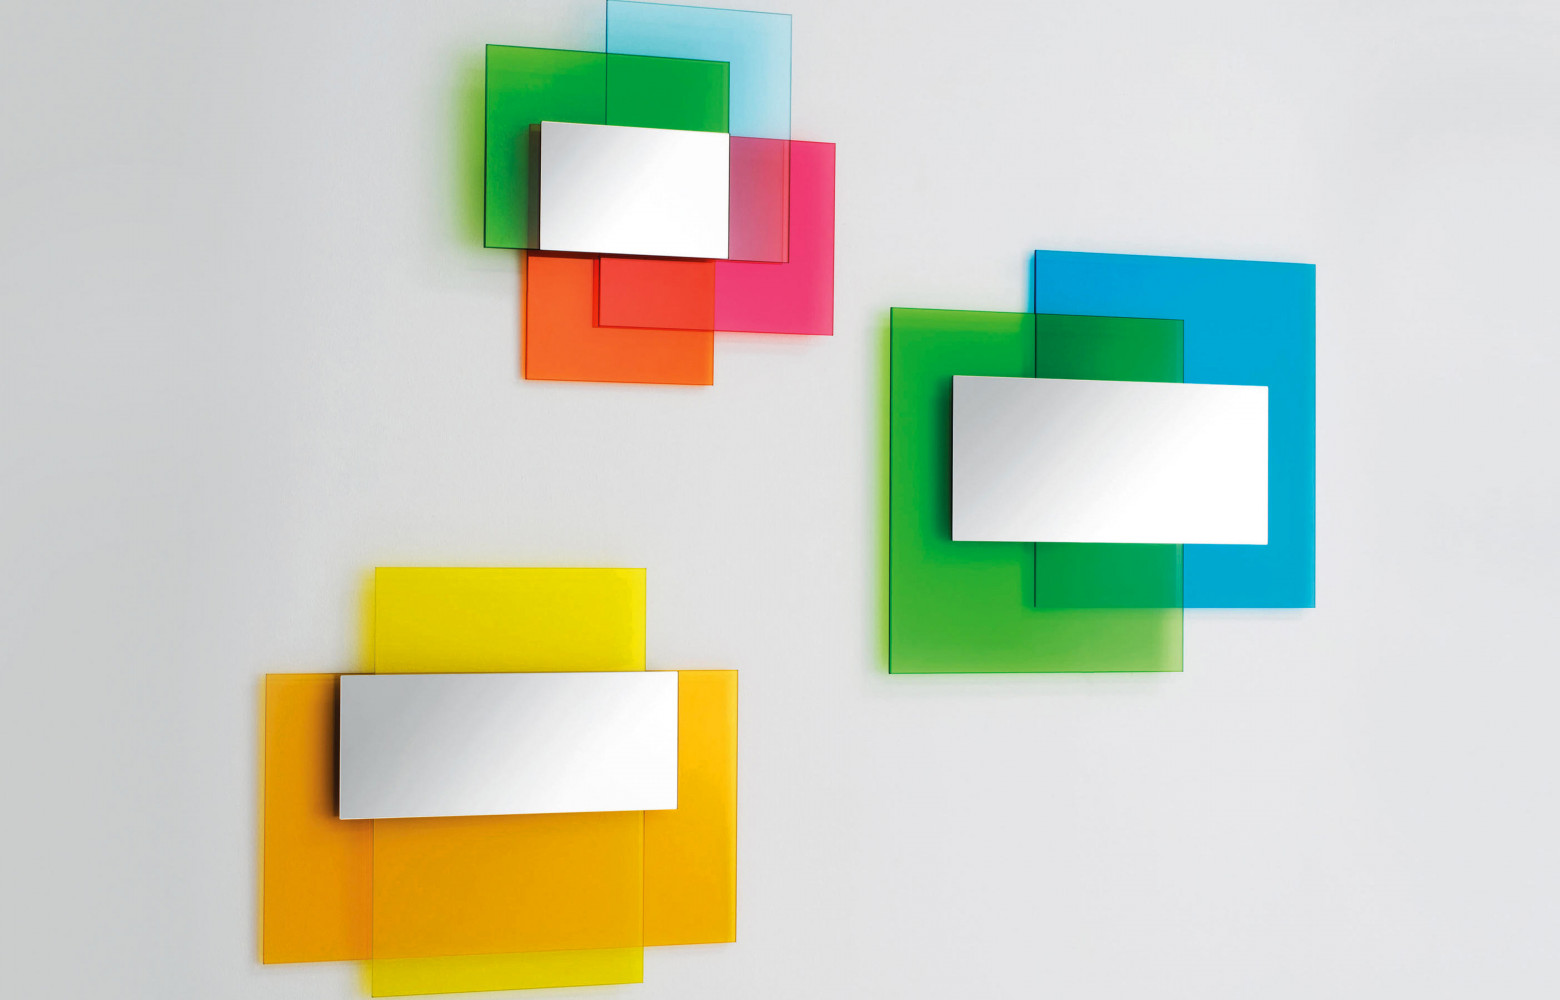 Miroir Colour on Colour de Johanna Grawunder (Glas Italia), disponible dans deux autres combinaisons de couleurs.